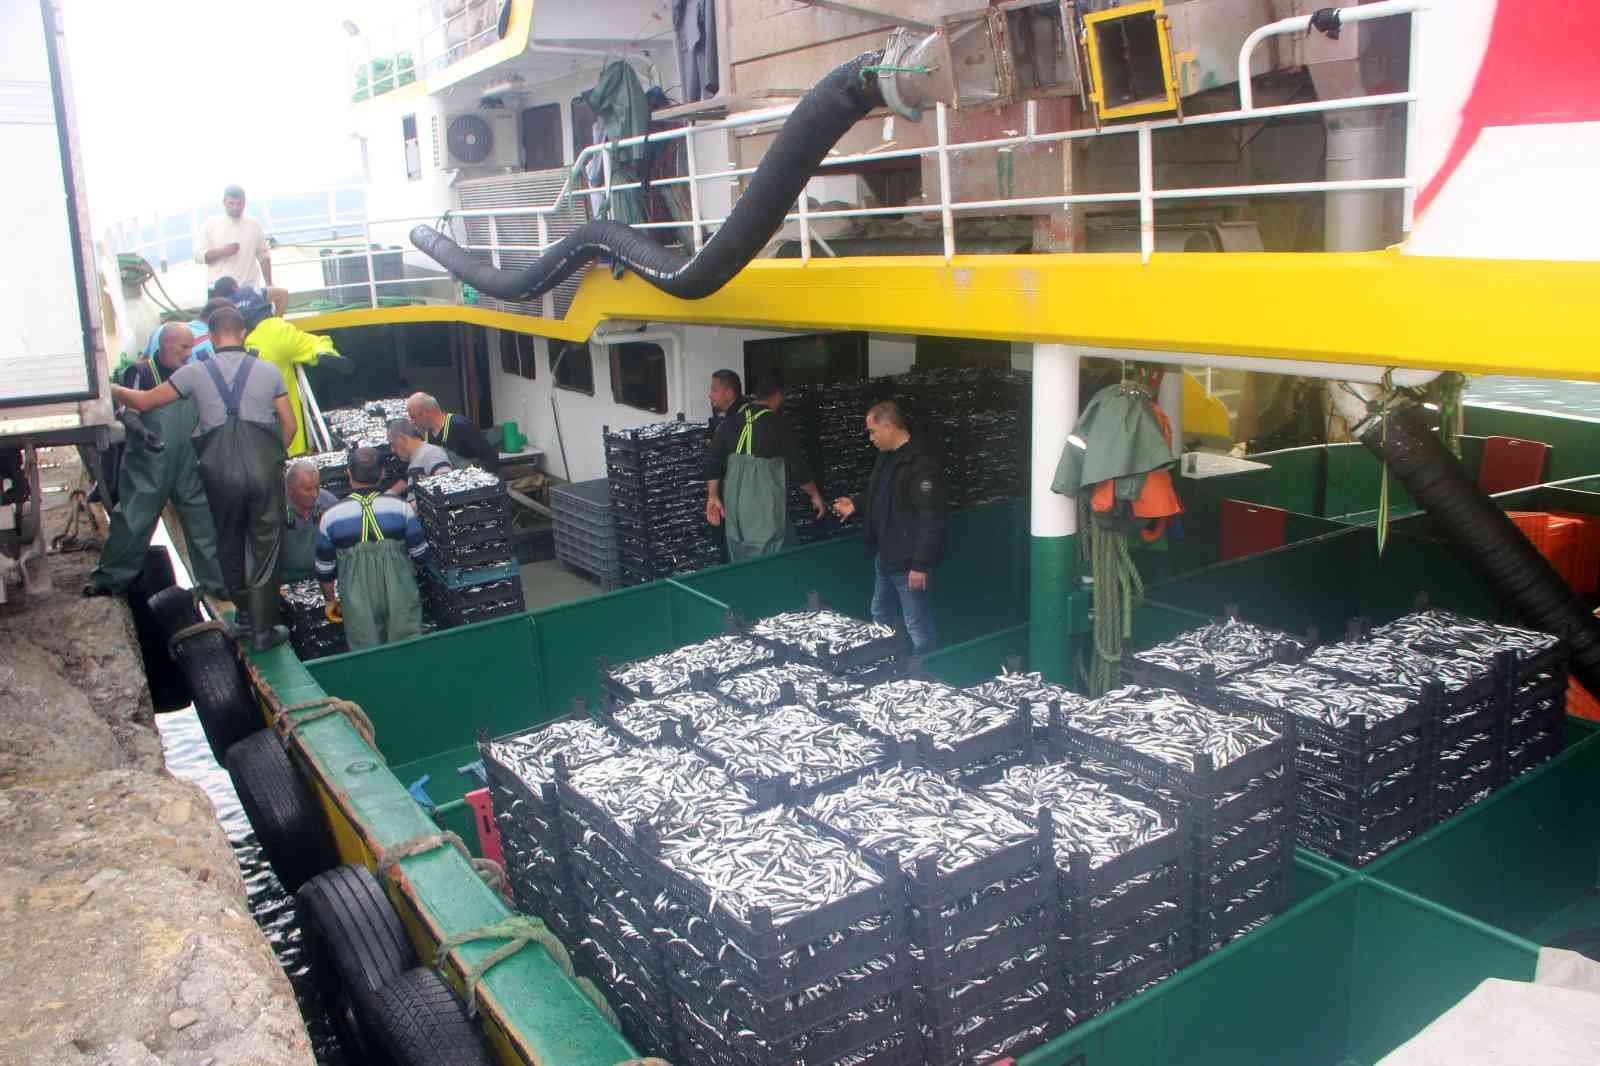 Balıkçılar denizden tonlarca hamsi ile döndü, fiyatı 10 TL’ye kadar düştü #kastamonu